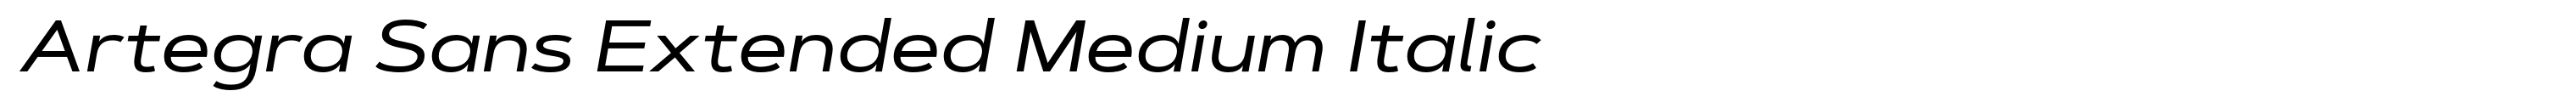 Artegra Sans Extended Medium Italic